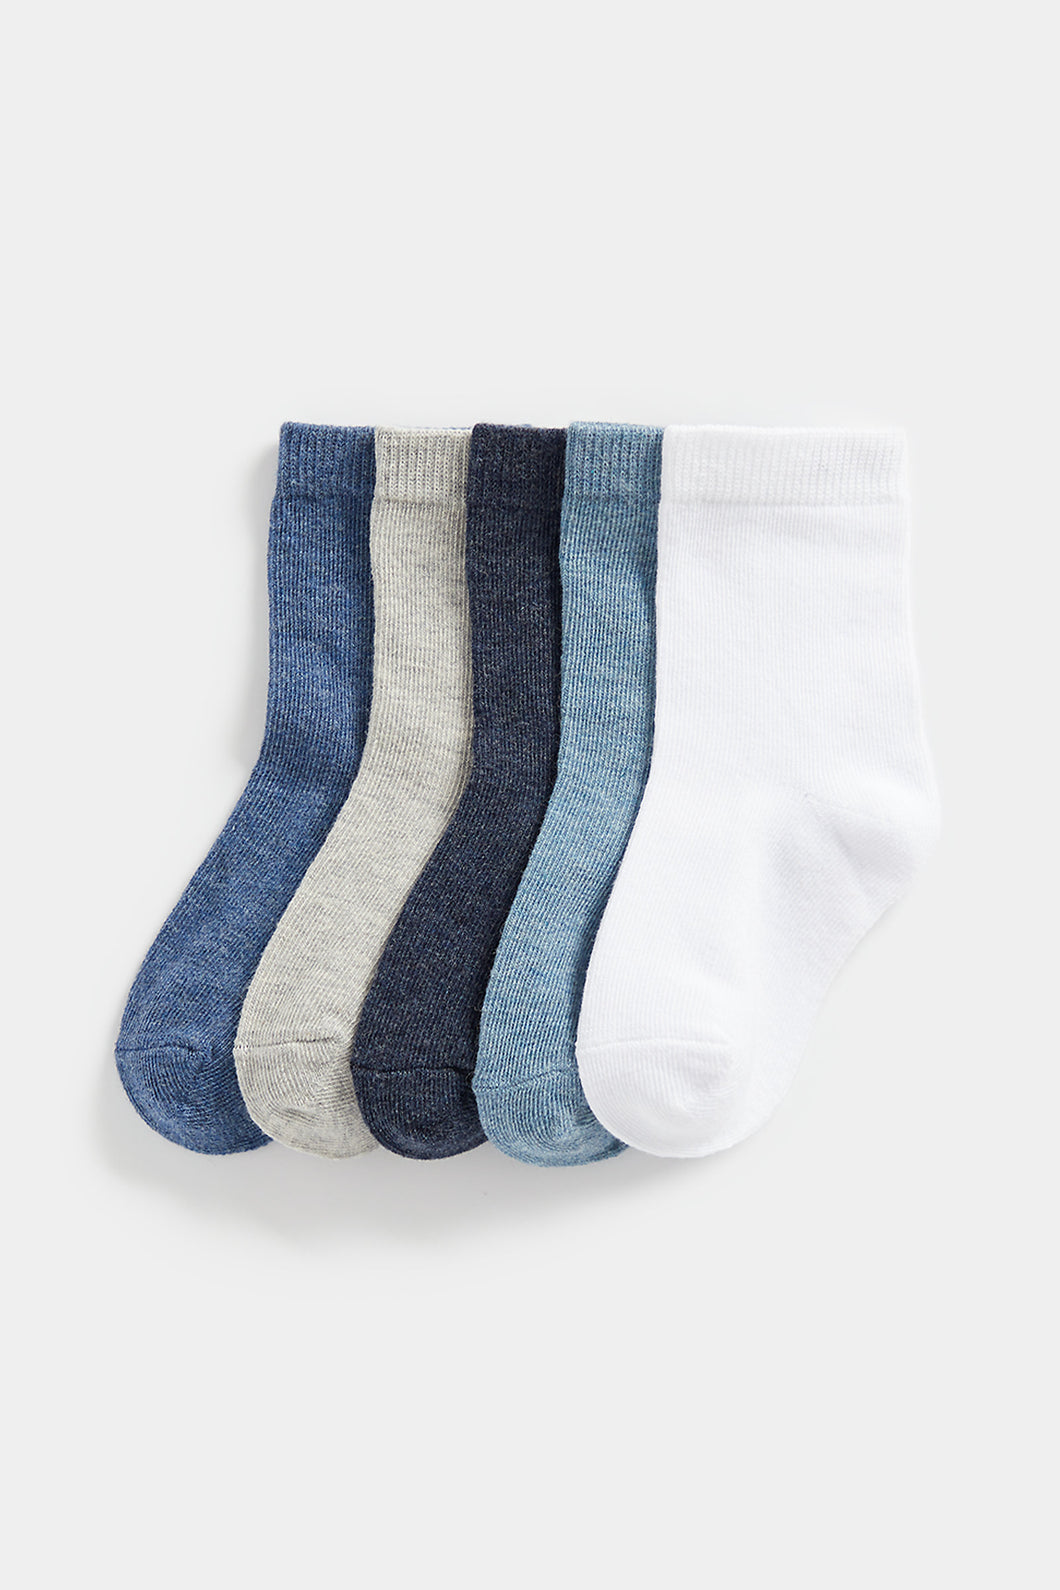 Mothercare Blue Socks - 5 Pack